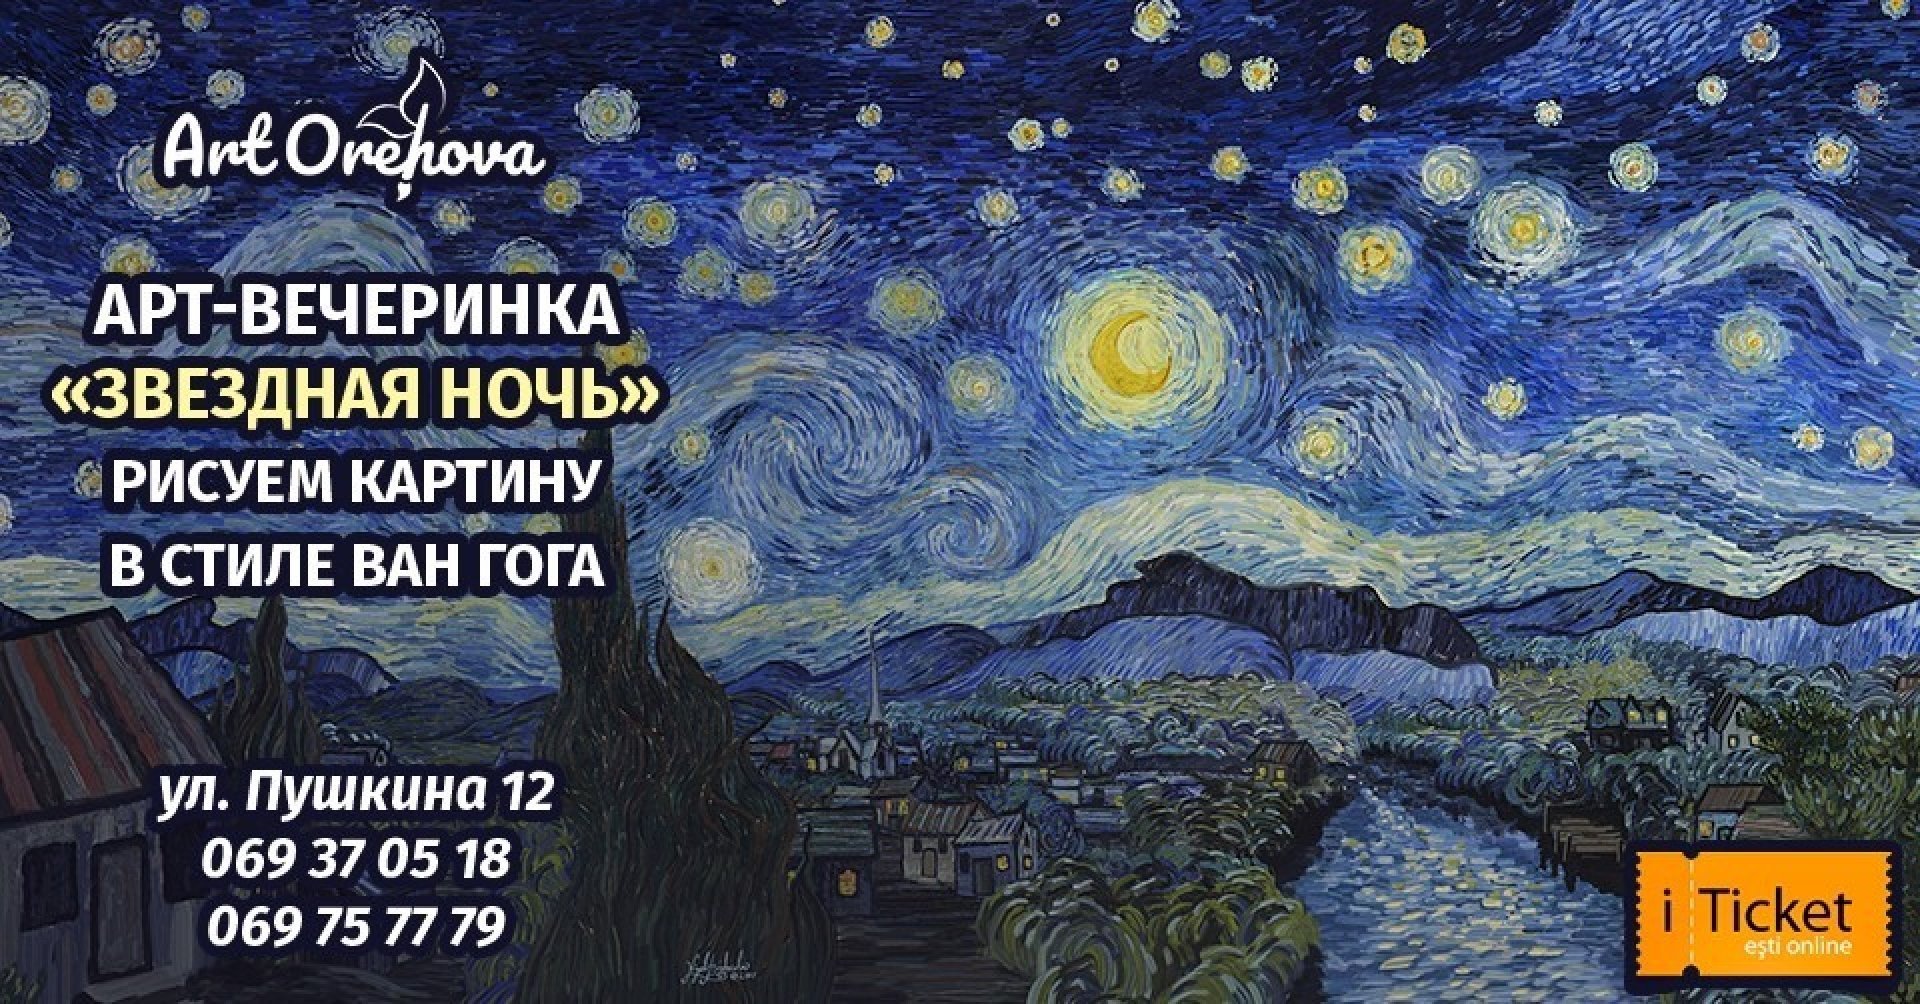 Вечеринка "Звёздная ночь" картина в стиле Ван Гога